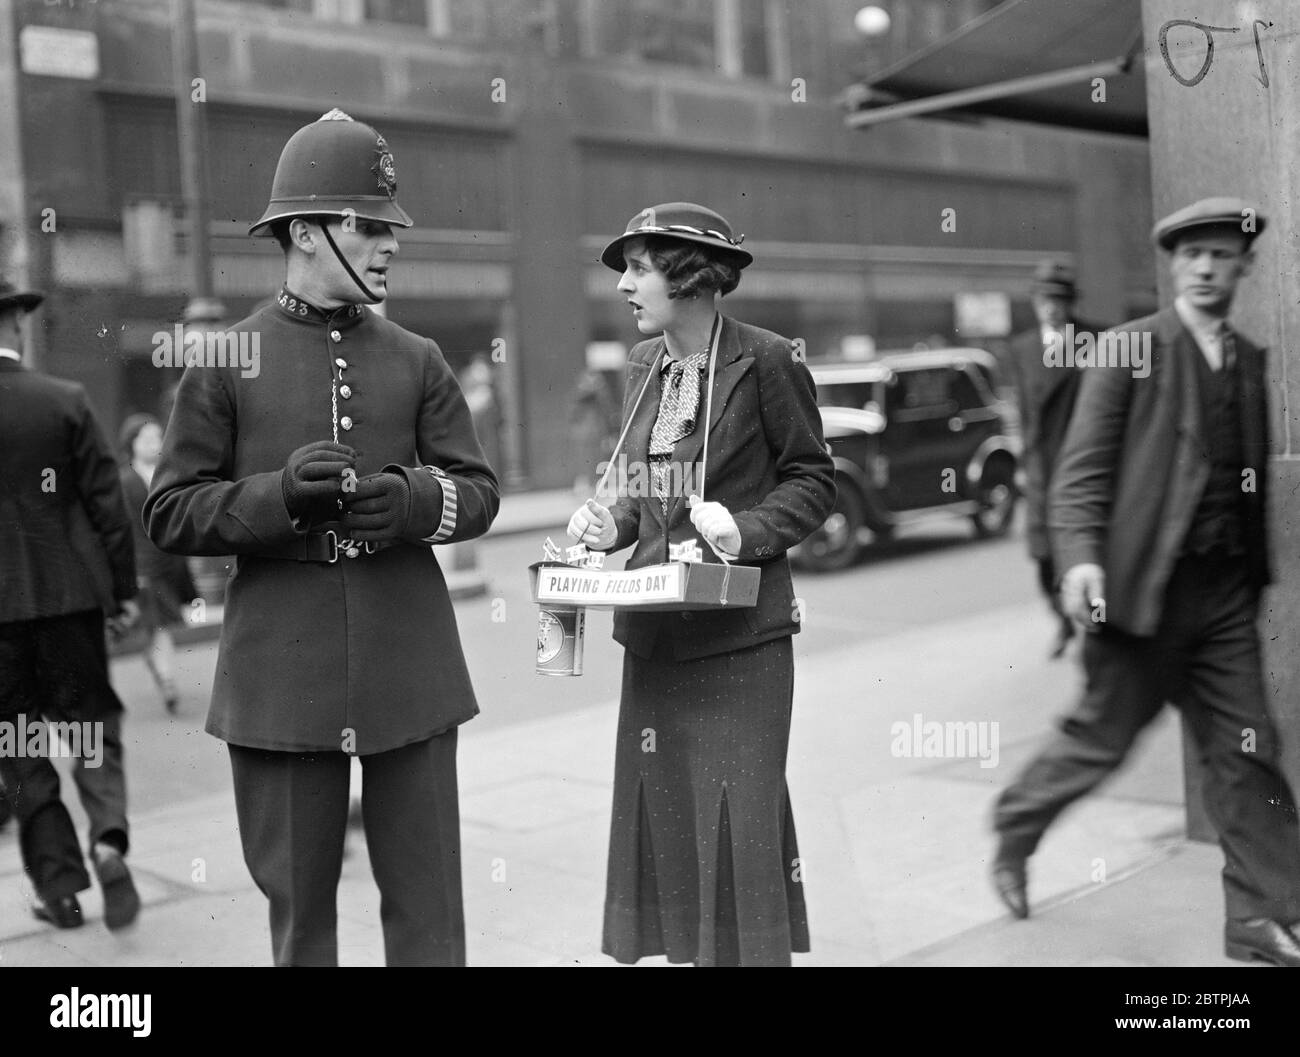 Bien abordé . Femme de l'ancien capitaine écossais de rugby , se rassemble sur ' jouant à Fields Day ' . ' Playing Fields Day ' un jour pour recueillir des fonds pour plus de terrains de jeu , a été célébré dans tout le Grand Londres . Beaucoup de femmes , célèbres dans les cercles théâtraux et de la Société , ont aidé dans les collections . Photos ; Mme A L Gracie , épouse de l'ancien capitaine écossais de rugby , ' s'attaquant ' à un policier à Oxford Street . 17 avril 1934 . 30s, 30s, 1930, 1930, 1930, trente, dix-neuf trente Banque D'Images